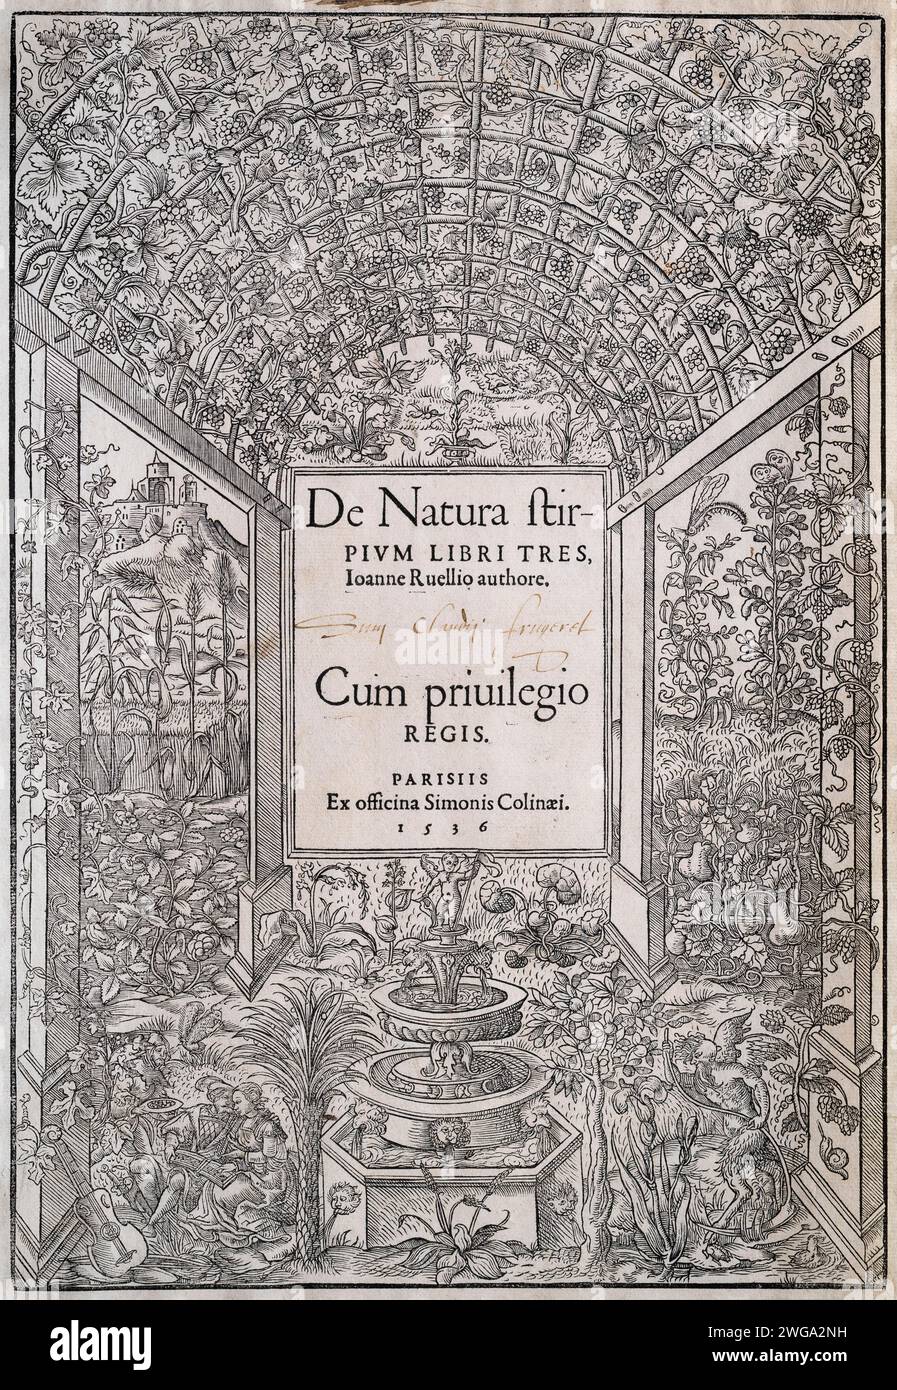 Frontispiece, title page, woodcut from De Natura stirpium libri tres by Simon de Colines, Paris, 1536 Stock Photo